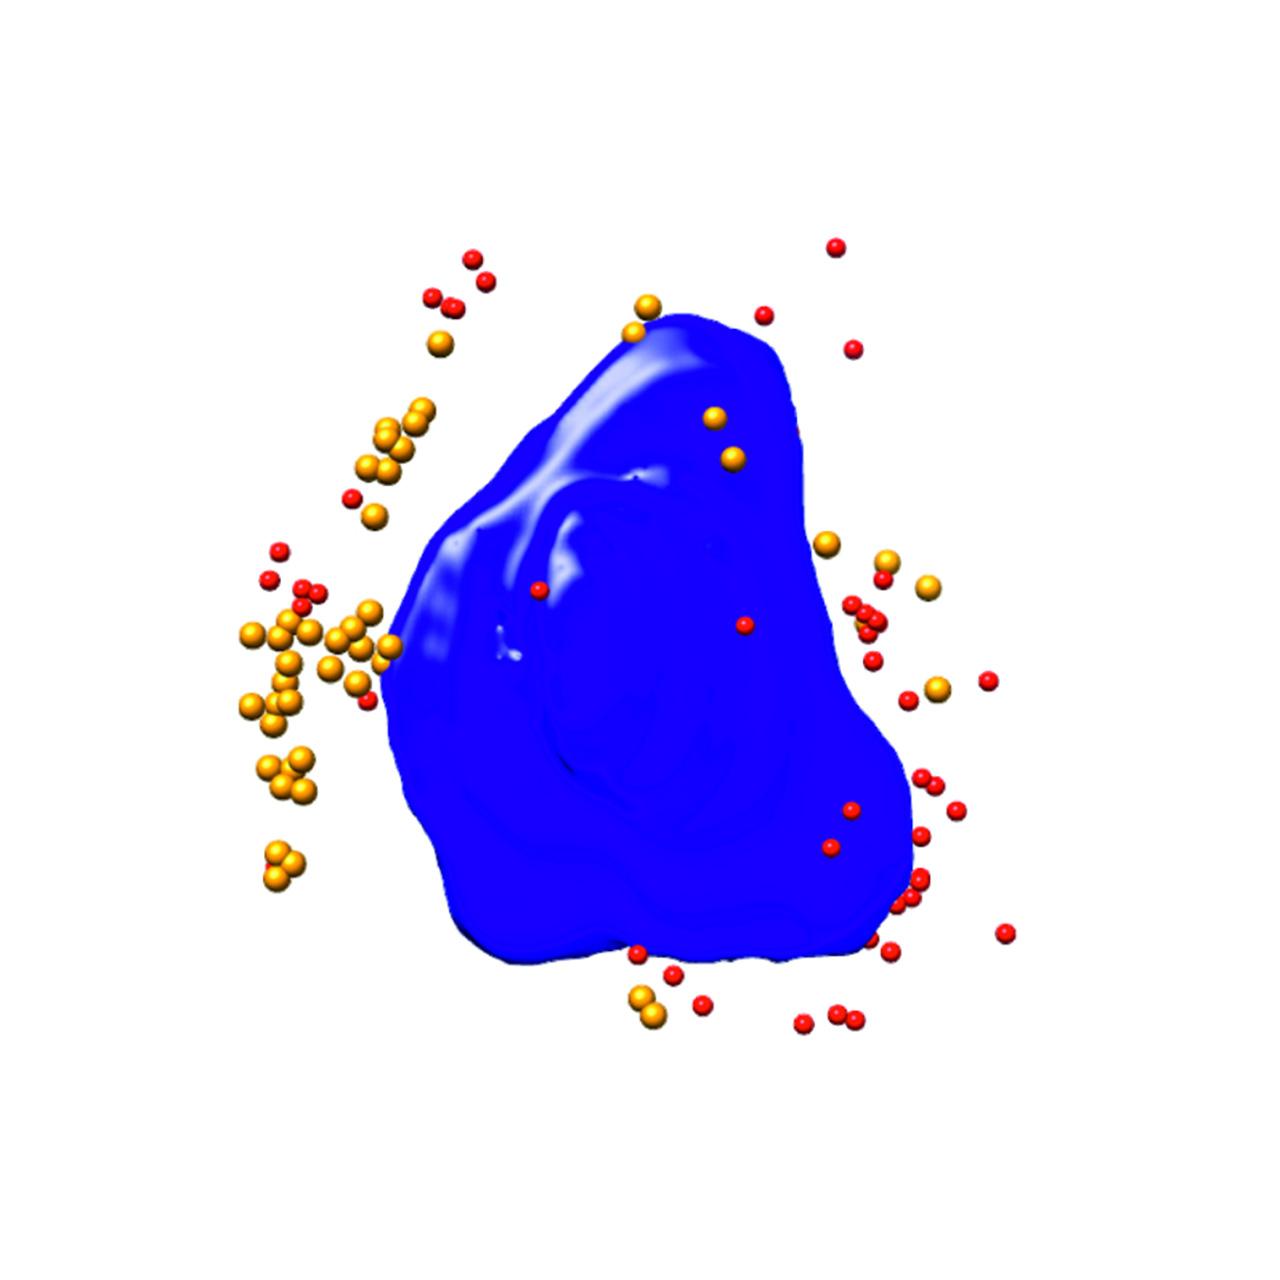 ウイルス感染Ptk2細胞のセグメンテーションされた3Dレンダリング。青：核、赤／オレンジ：ウイルス粒子、細胞幅：10 µm、Xradia 825 Synchrotron。画像ご提供：F.J. Chichon, CNB-CSIC and ALBA Synchrotron (Spain)